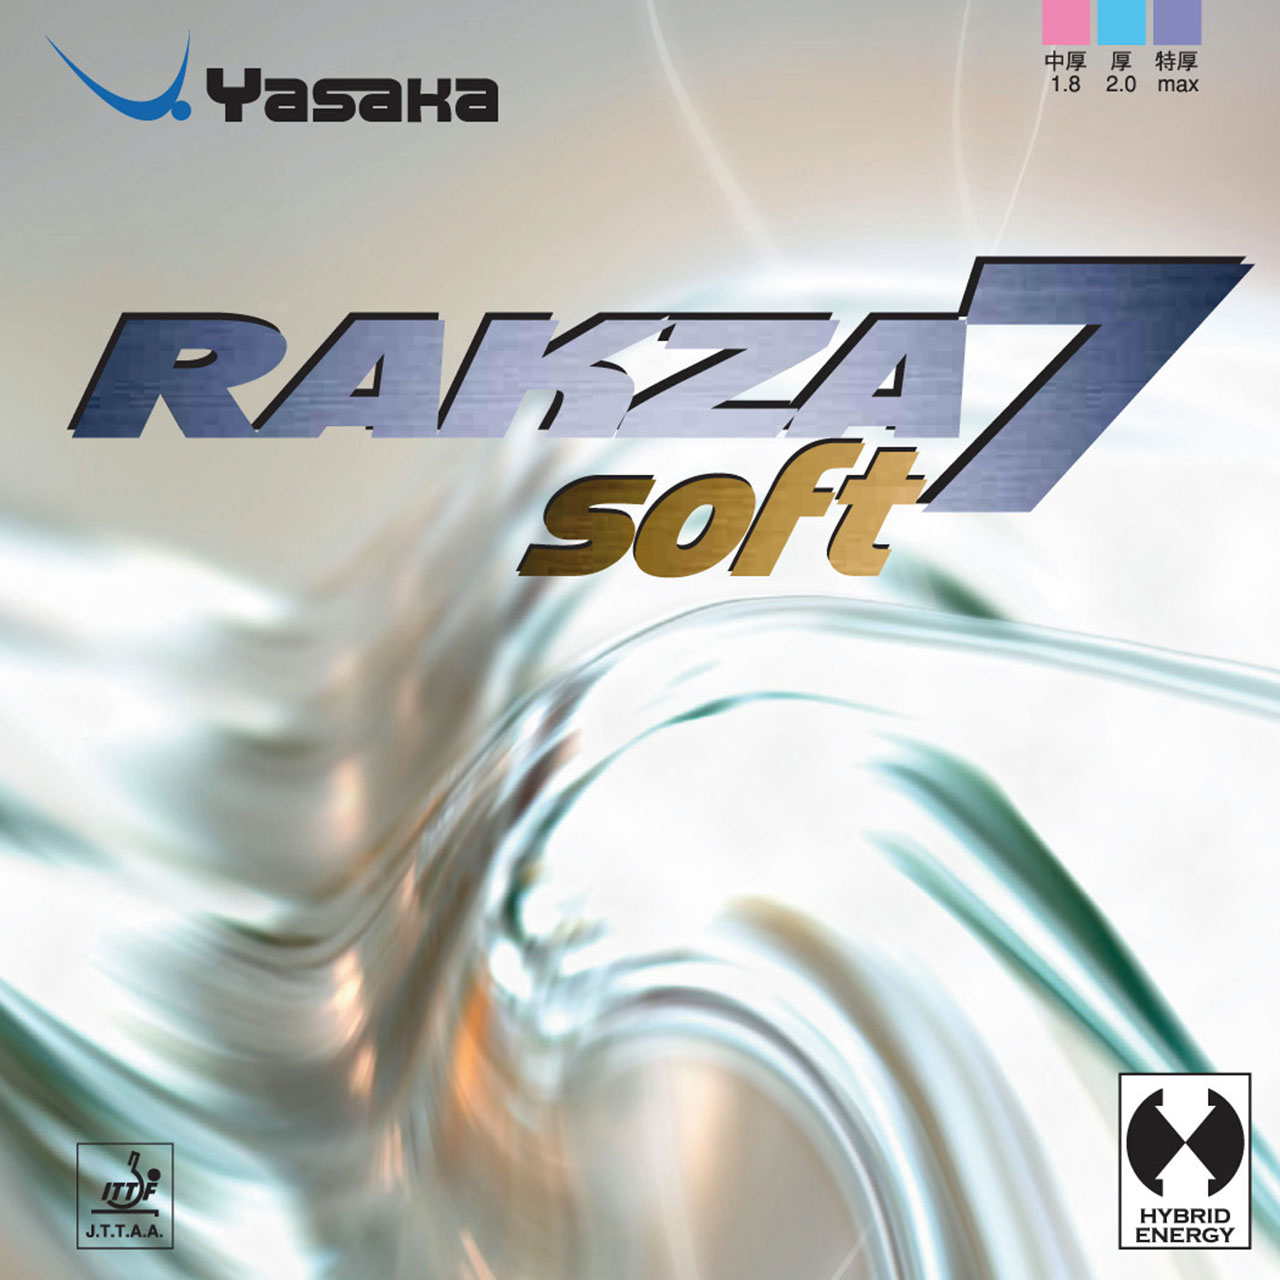 Накладка Yasaka Rakza 7 Soft max red